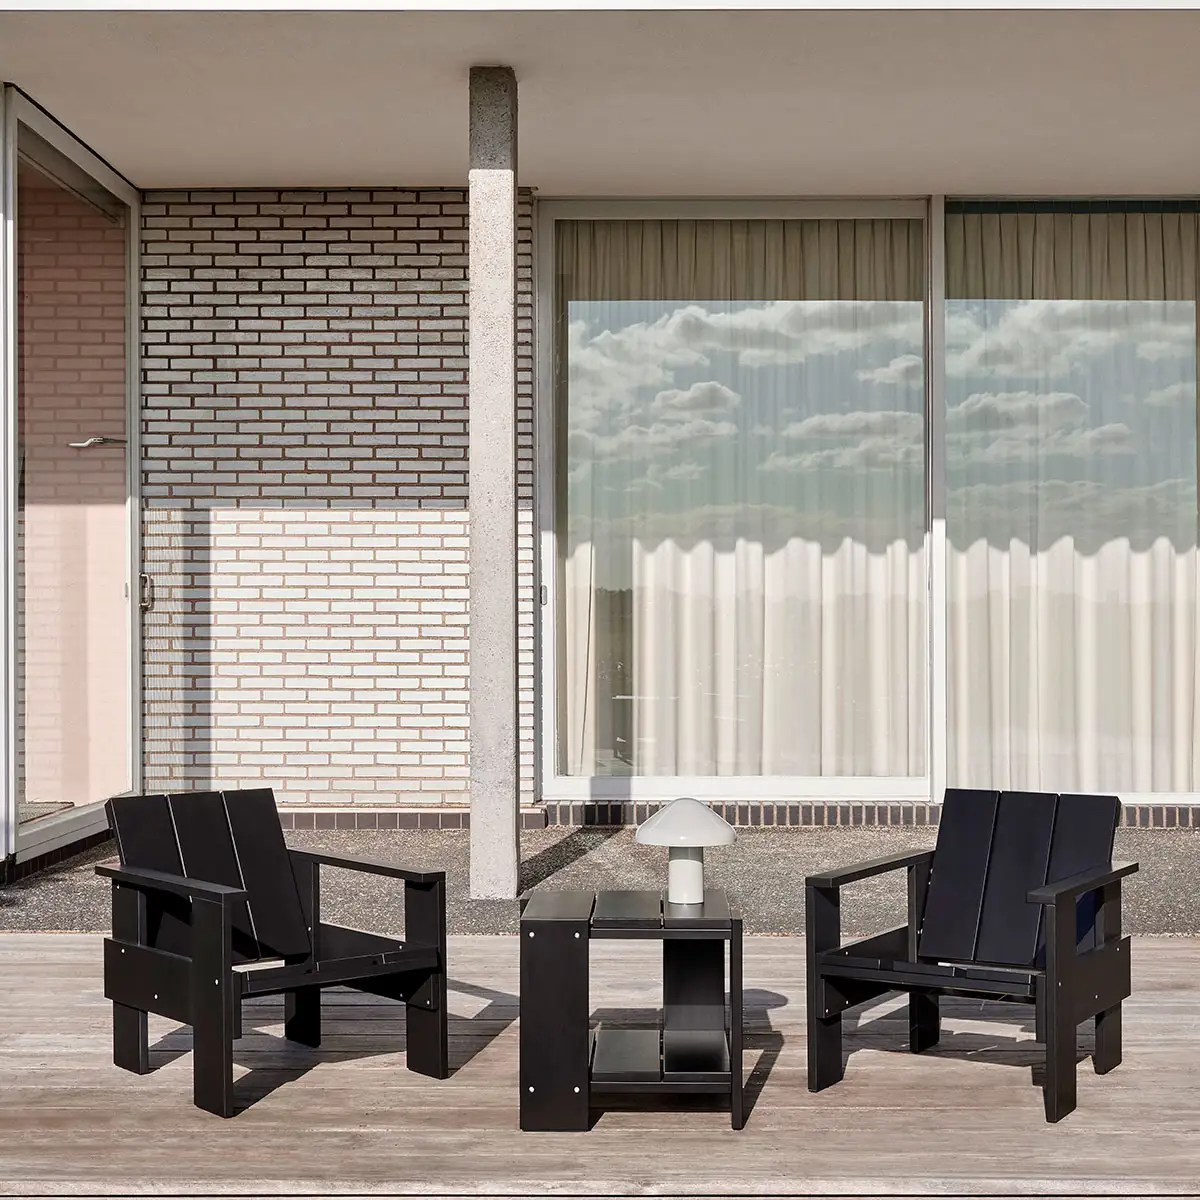 Conjunto de terraza de dos sillas y una mesita de madera negra en espacio iluminado con fondo gris y ventanal.